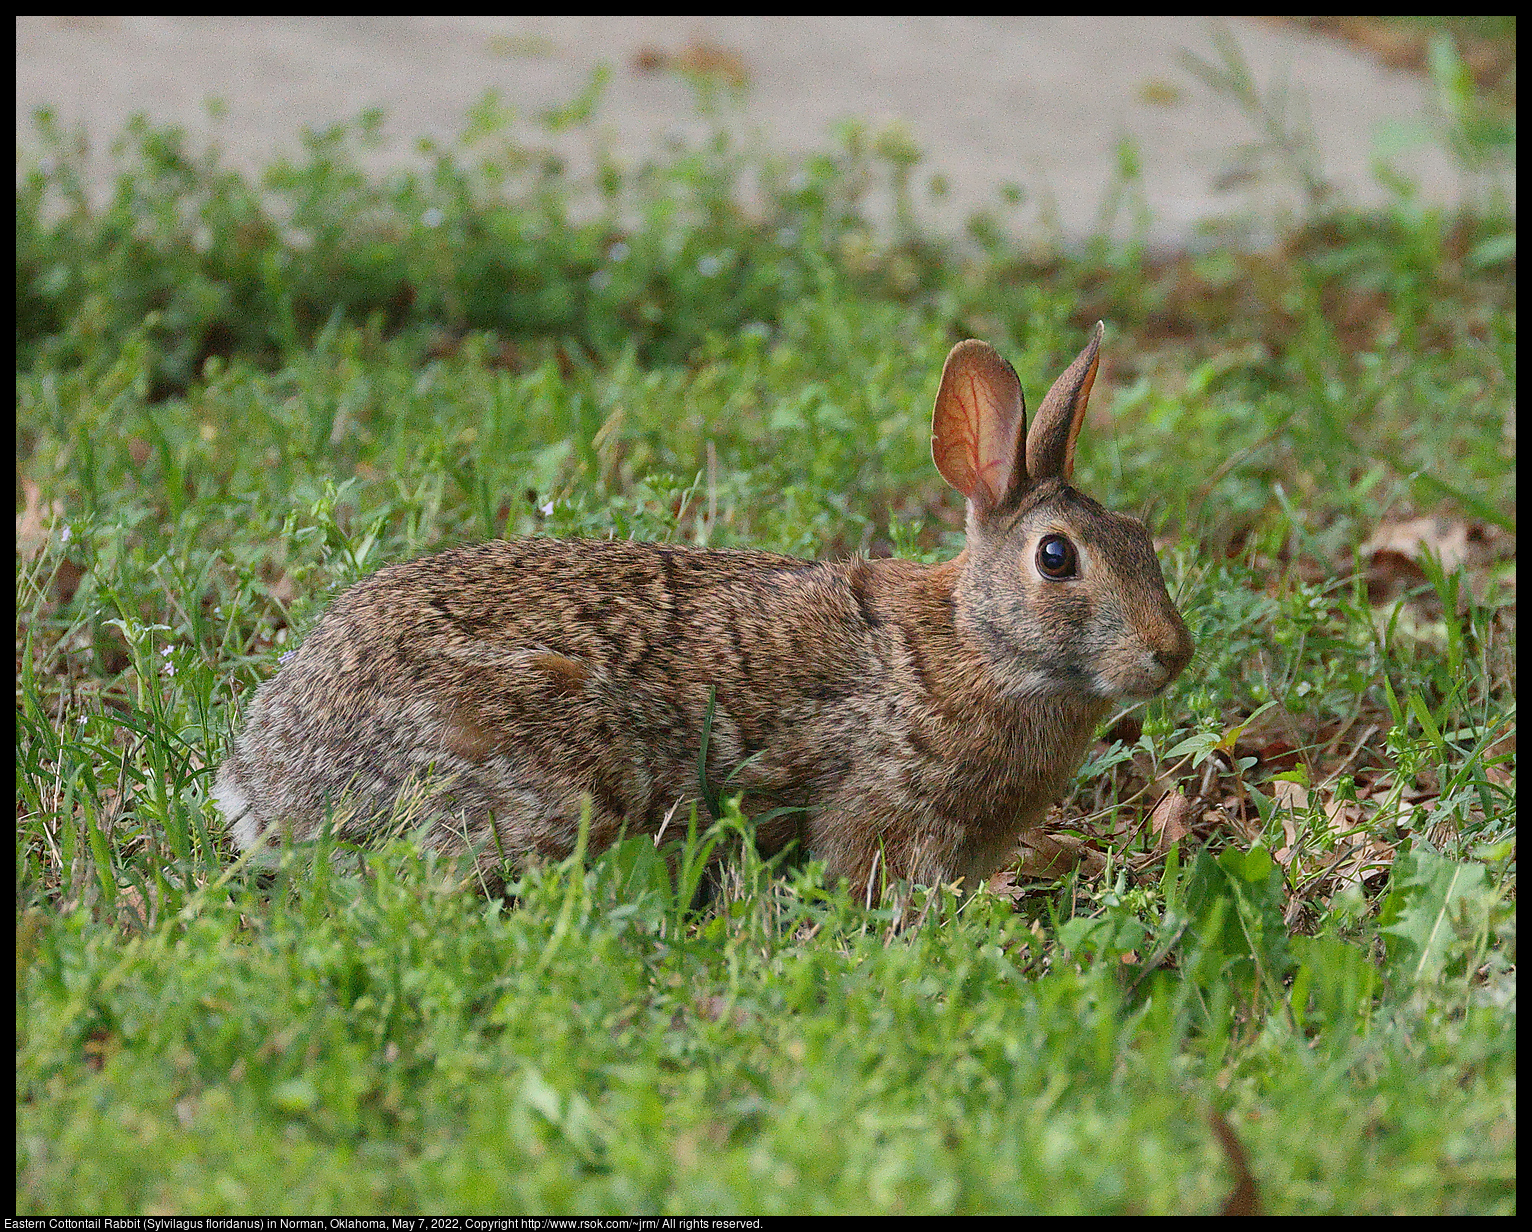 Eastern Cottontail Rabbit (Sylvilagus floridanus) in Norman, Oklahoma, May 7, 2022